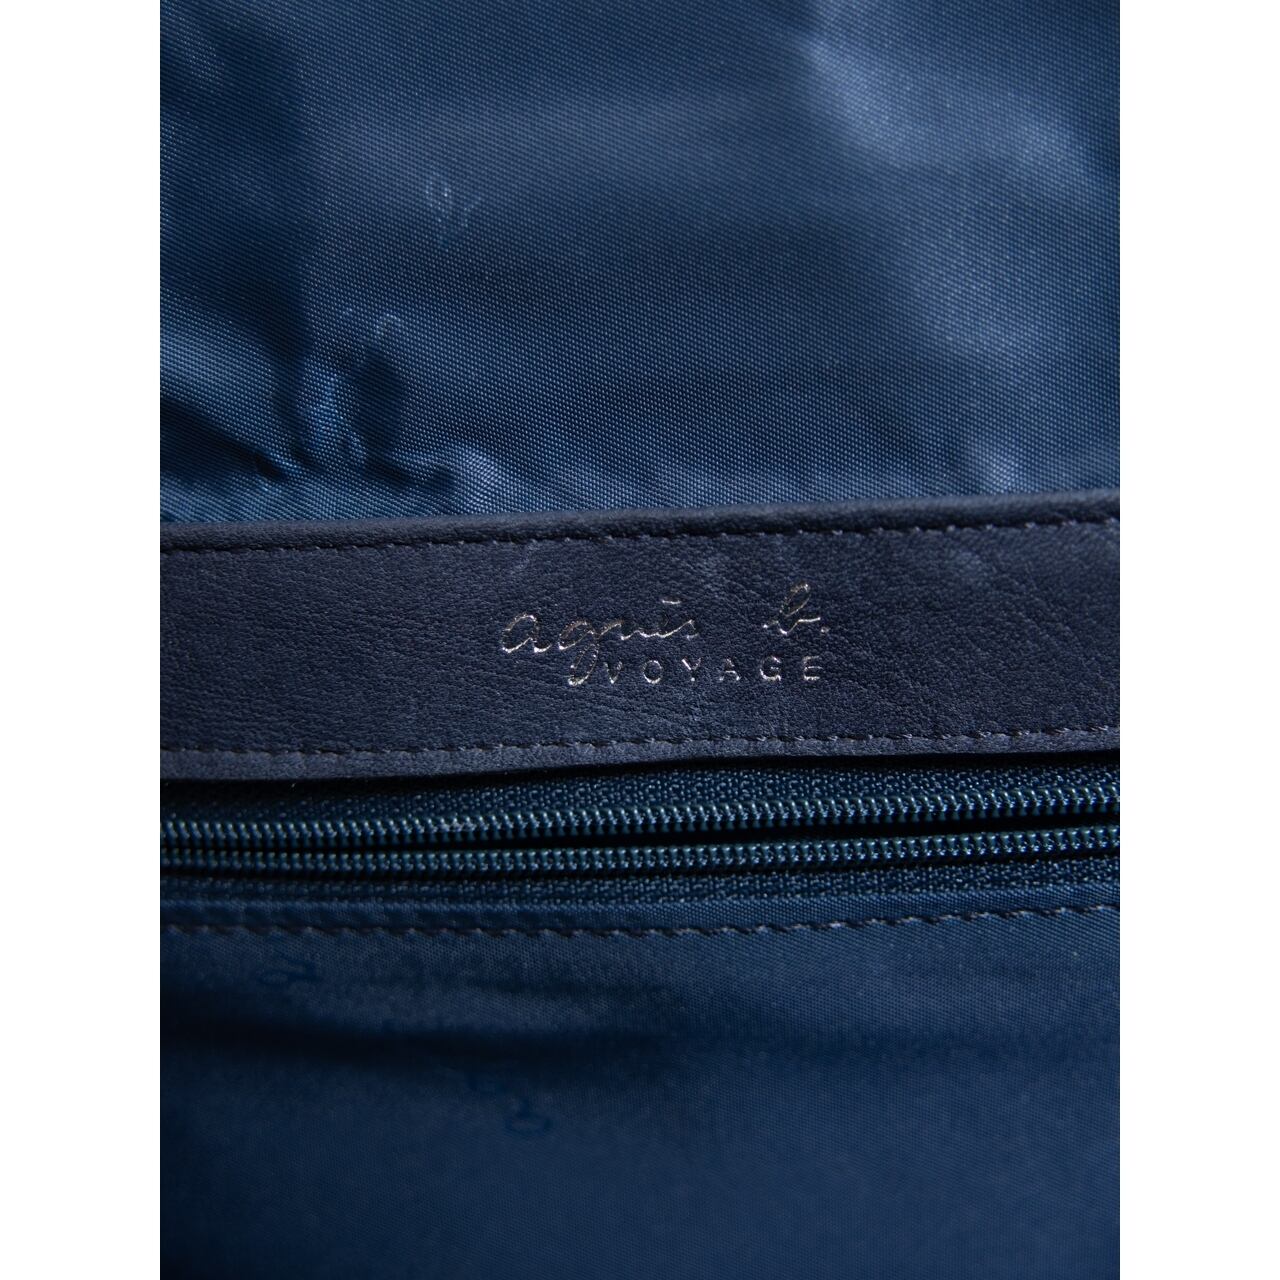 【agnes b.】90's Nylon-Leather Handbag（アニエスべー ナイロンレザーハンドバッグ）